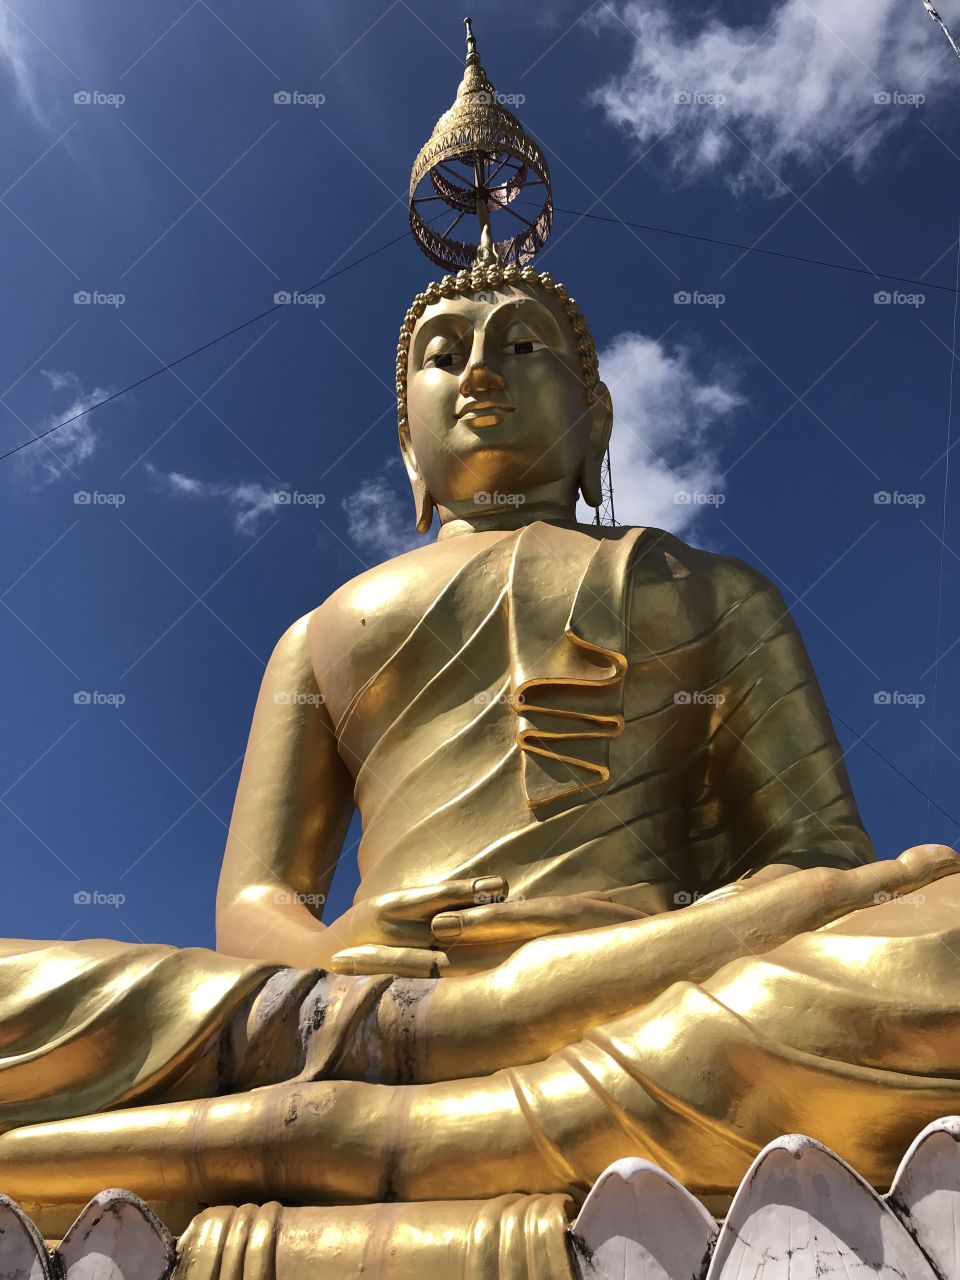 Golden Buddha in Krabi, Thailand